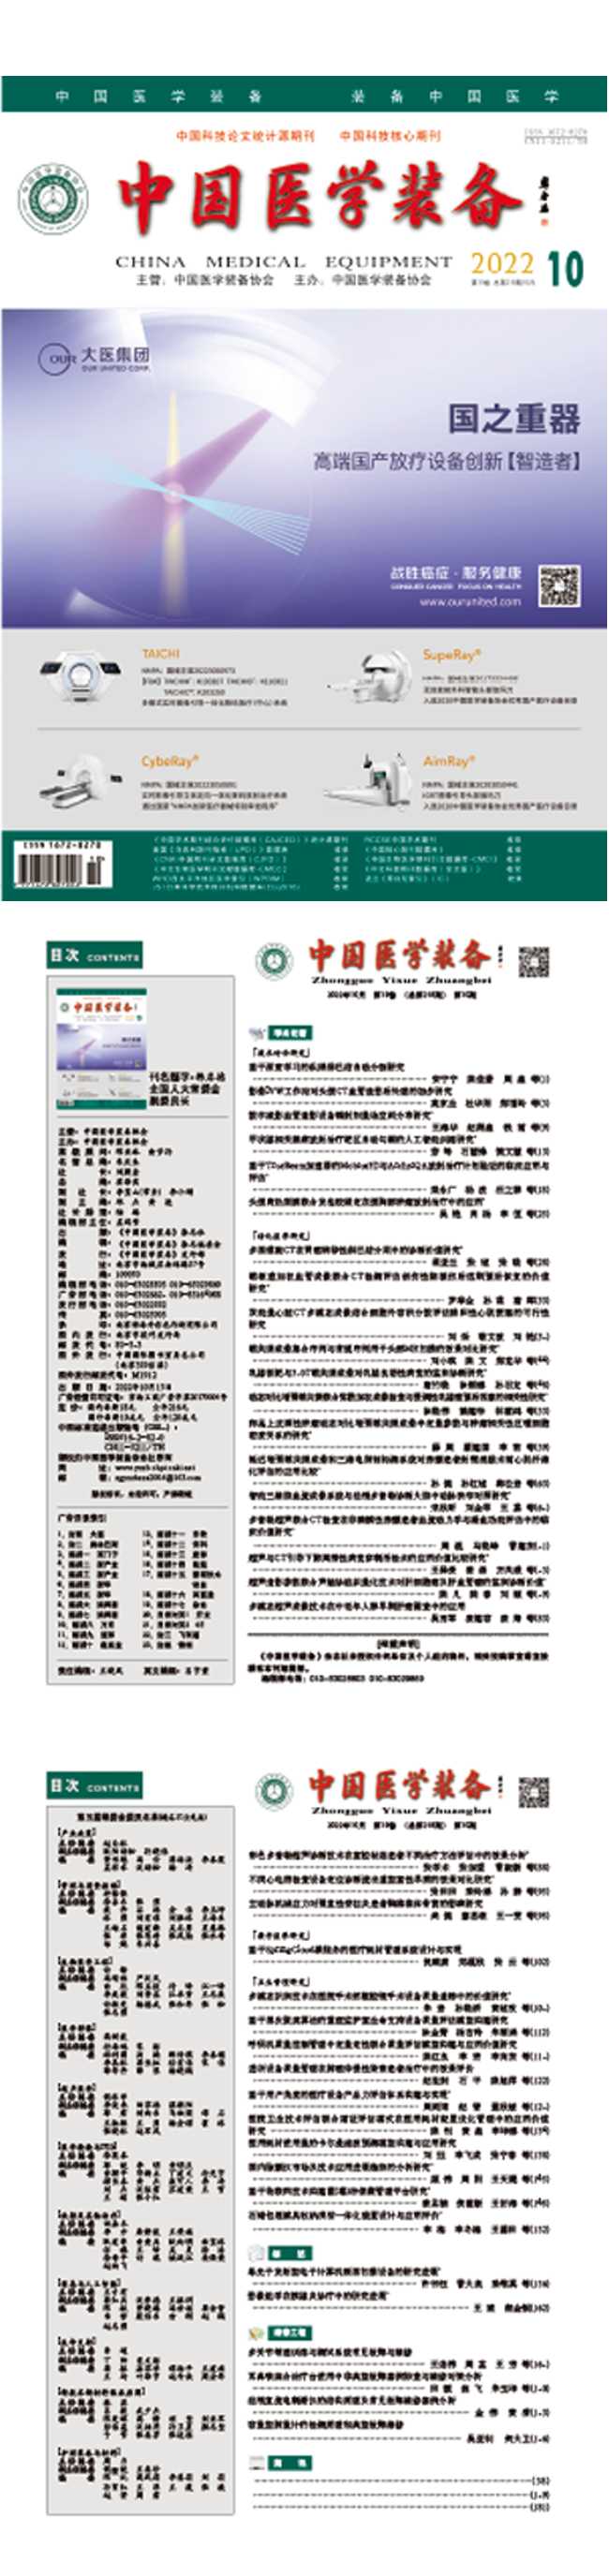 《中国医学装备》2022年10期出版(图1)